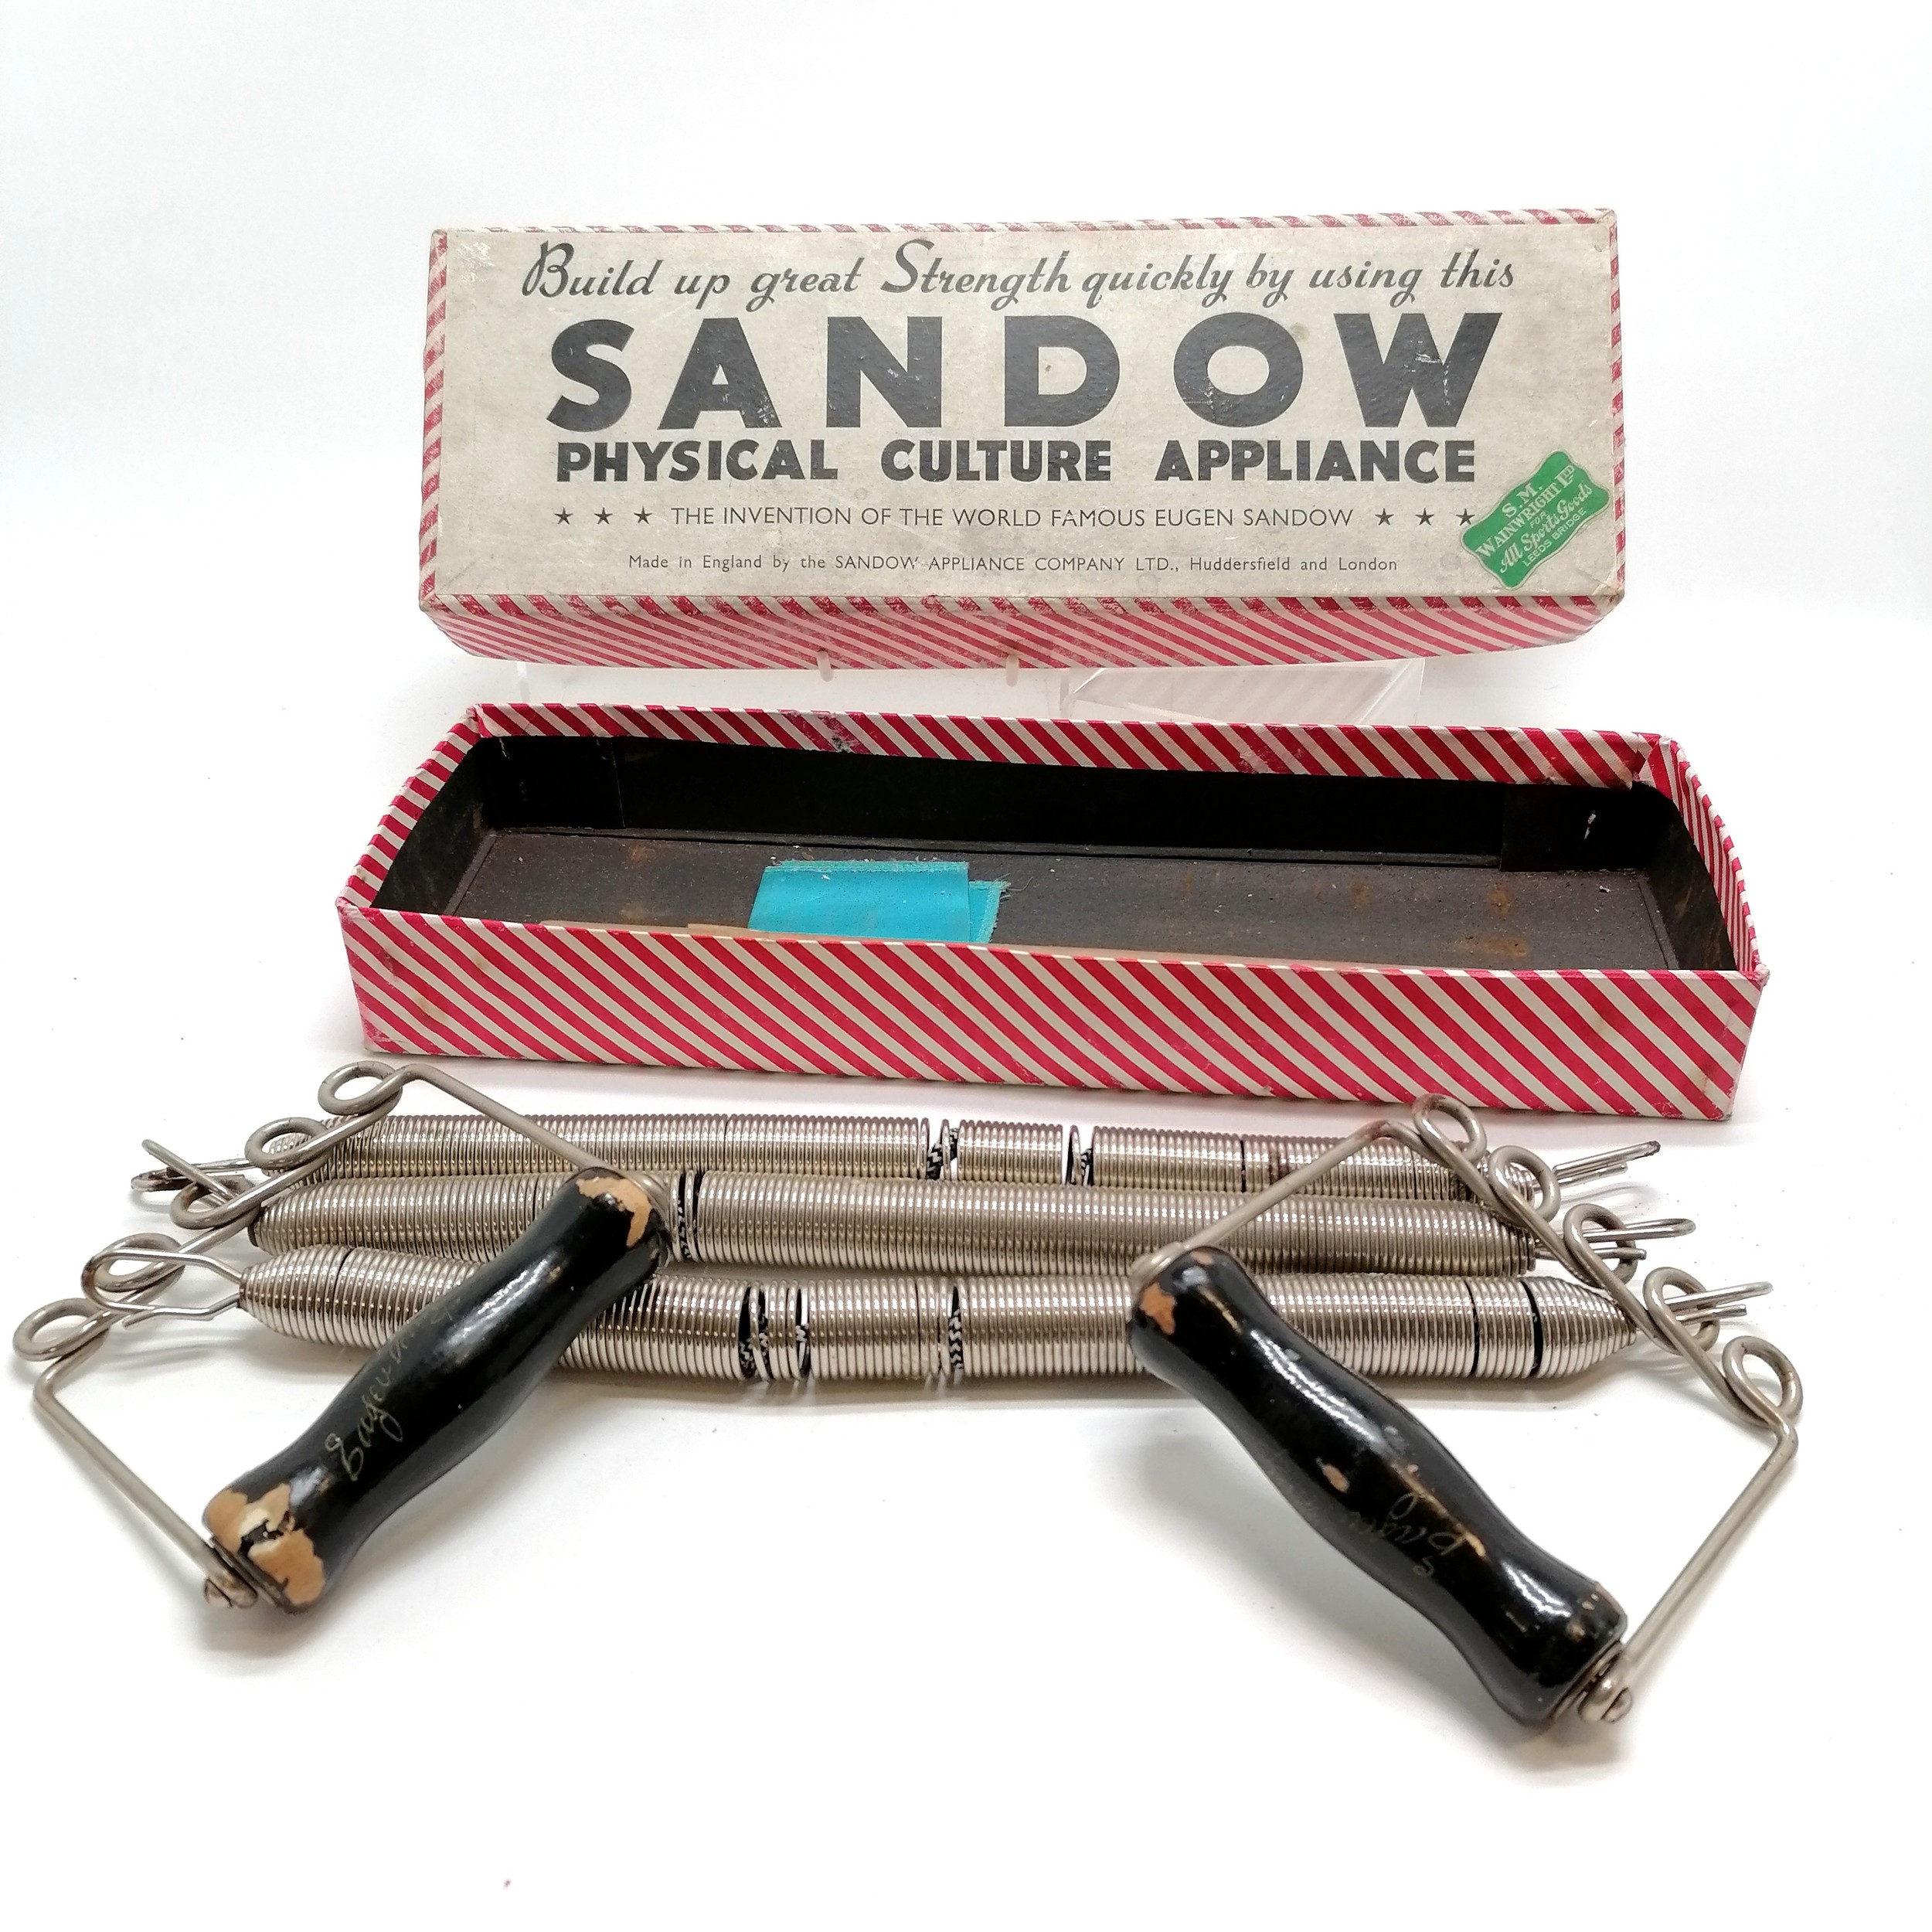 Sandow culture appliance boxed fitness chest expander - box 42cm x 14cm x 5.5cm